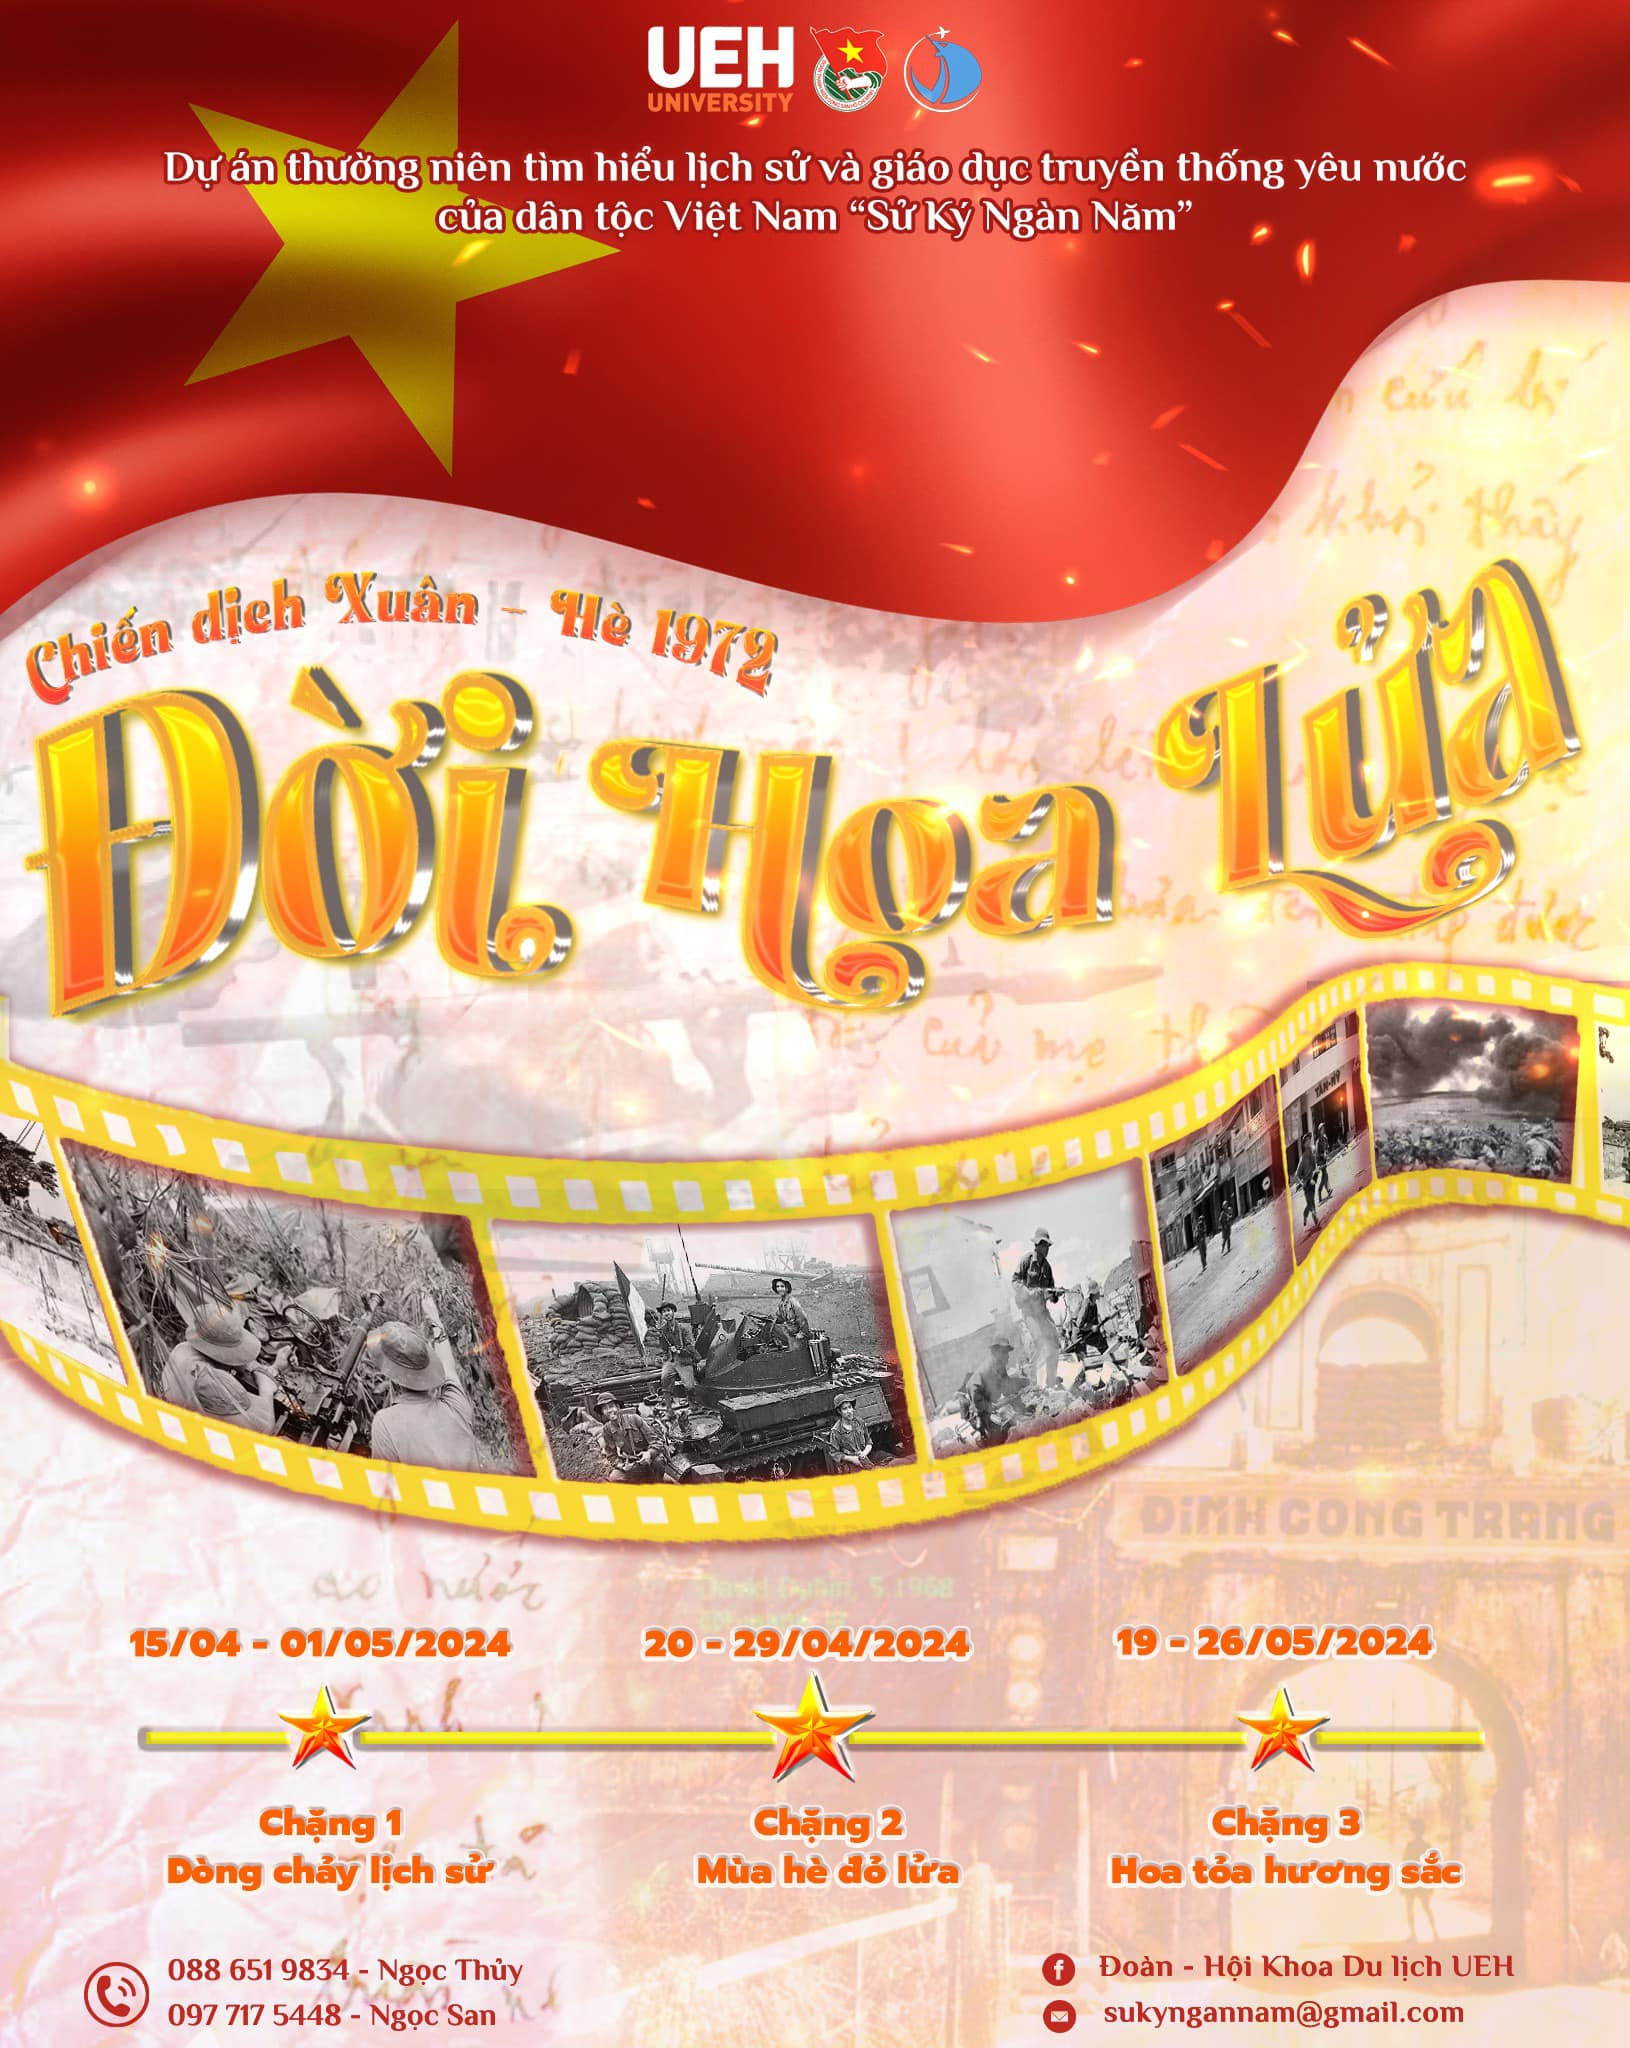 Dự án tìm hiểu lịch sử và giáo dục truyền thống yêu nước của dân tộc Việt Nam “Sử ký ngàn năm” khoa Du lịch: Đời Hoa Lửa